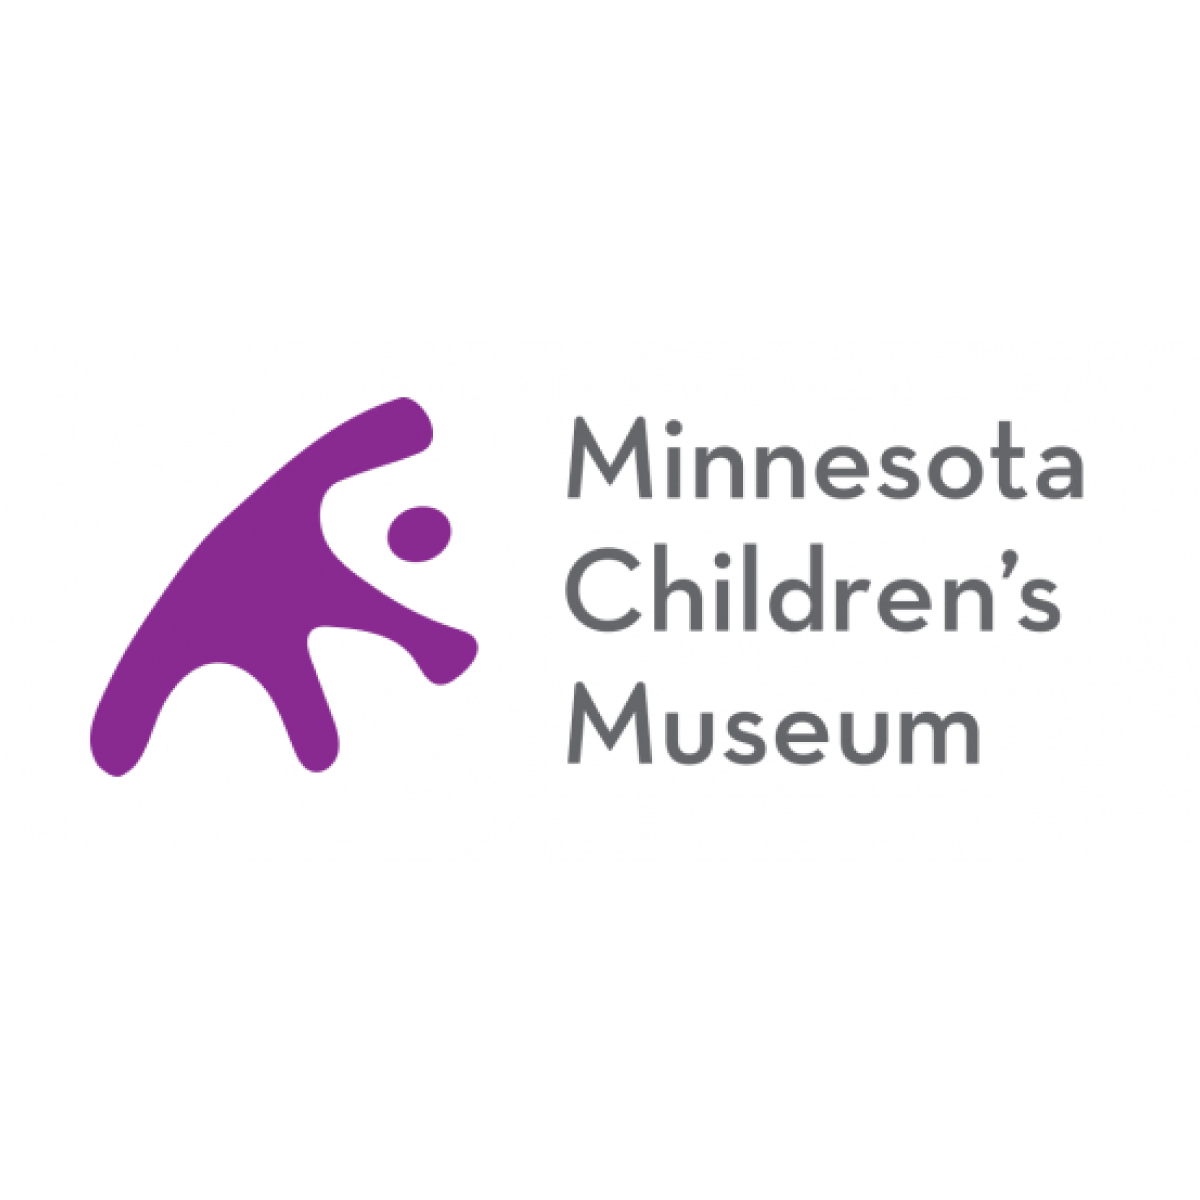 Museo del Niño de Minnesota  
mcm.org